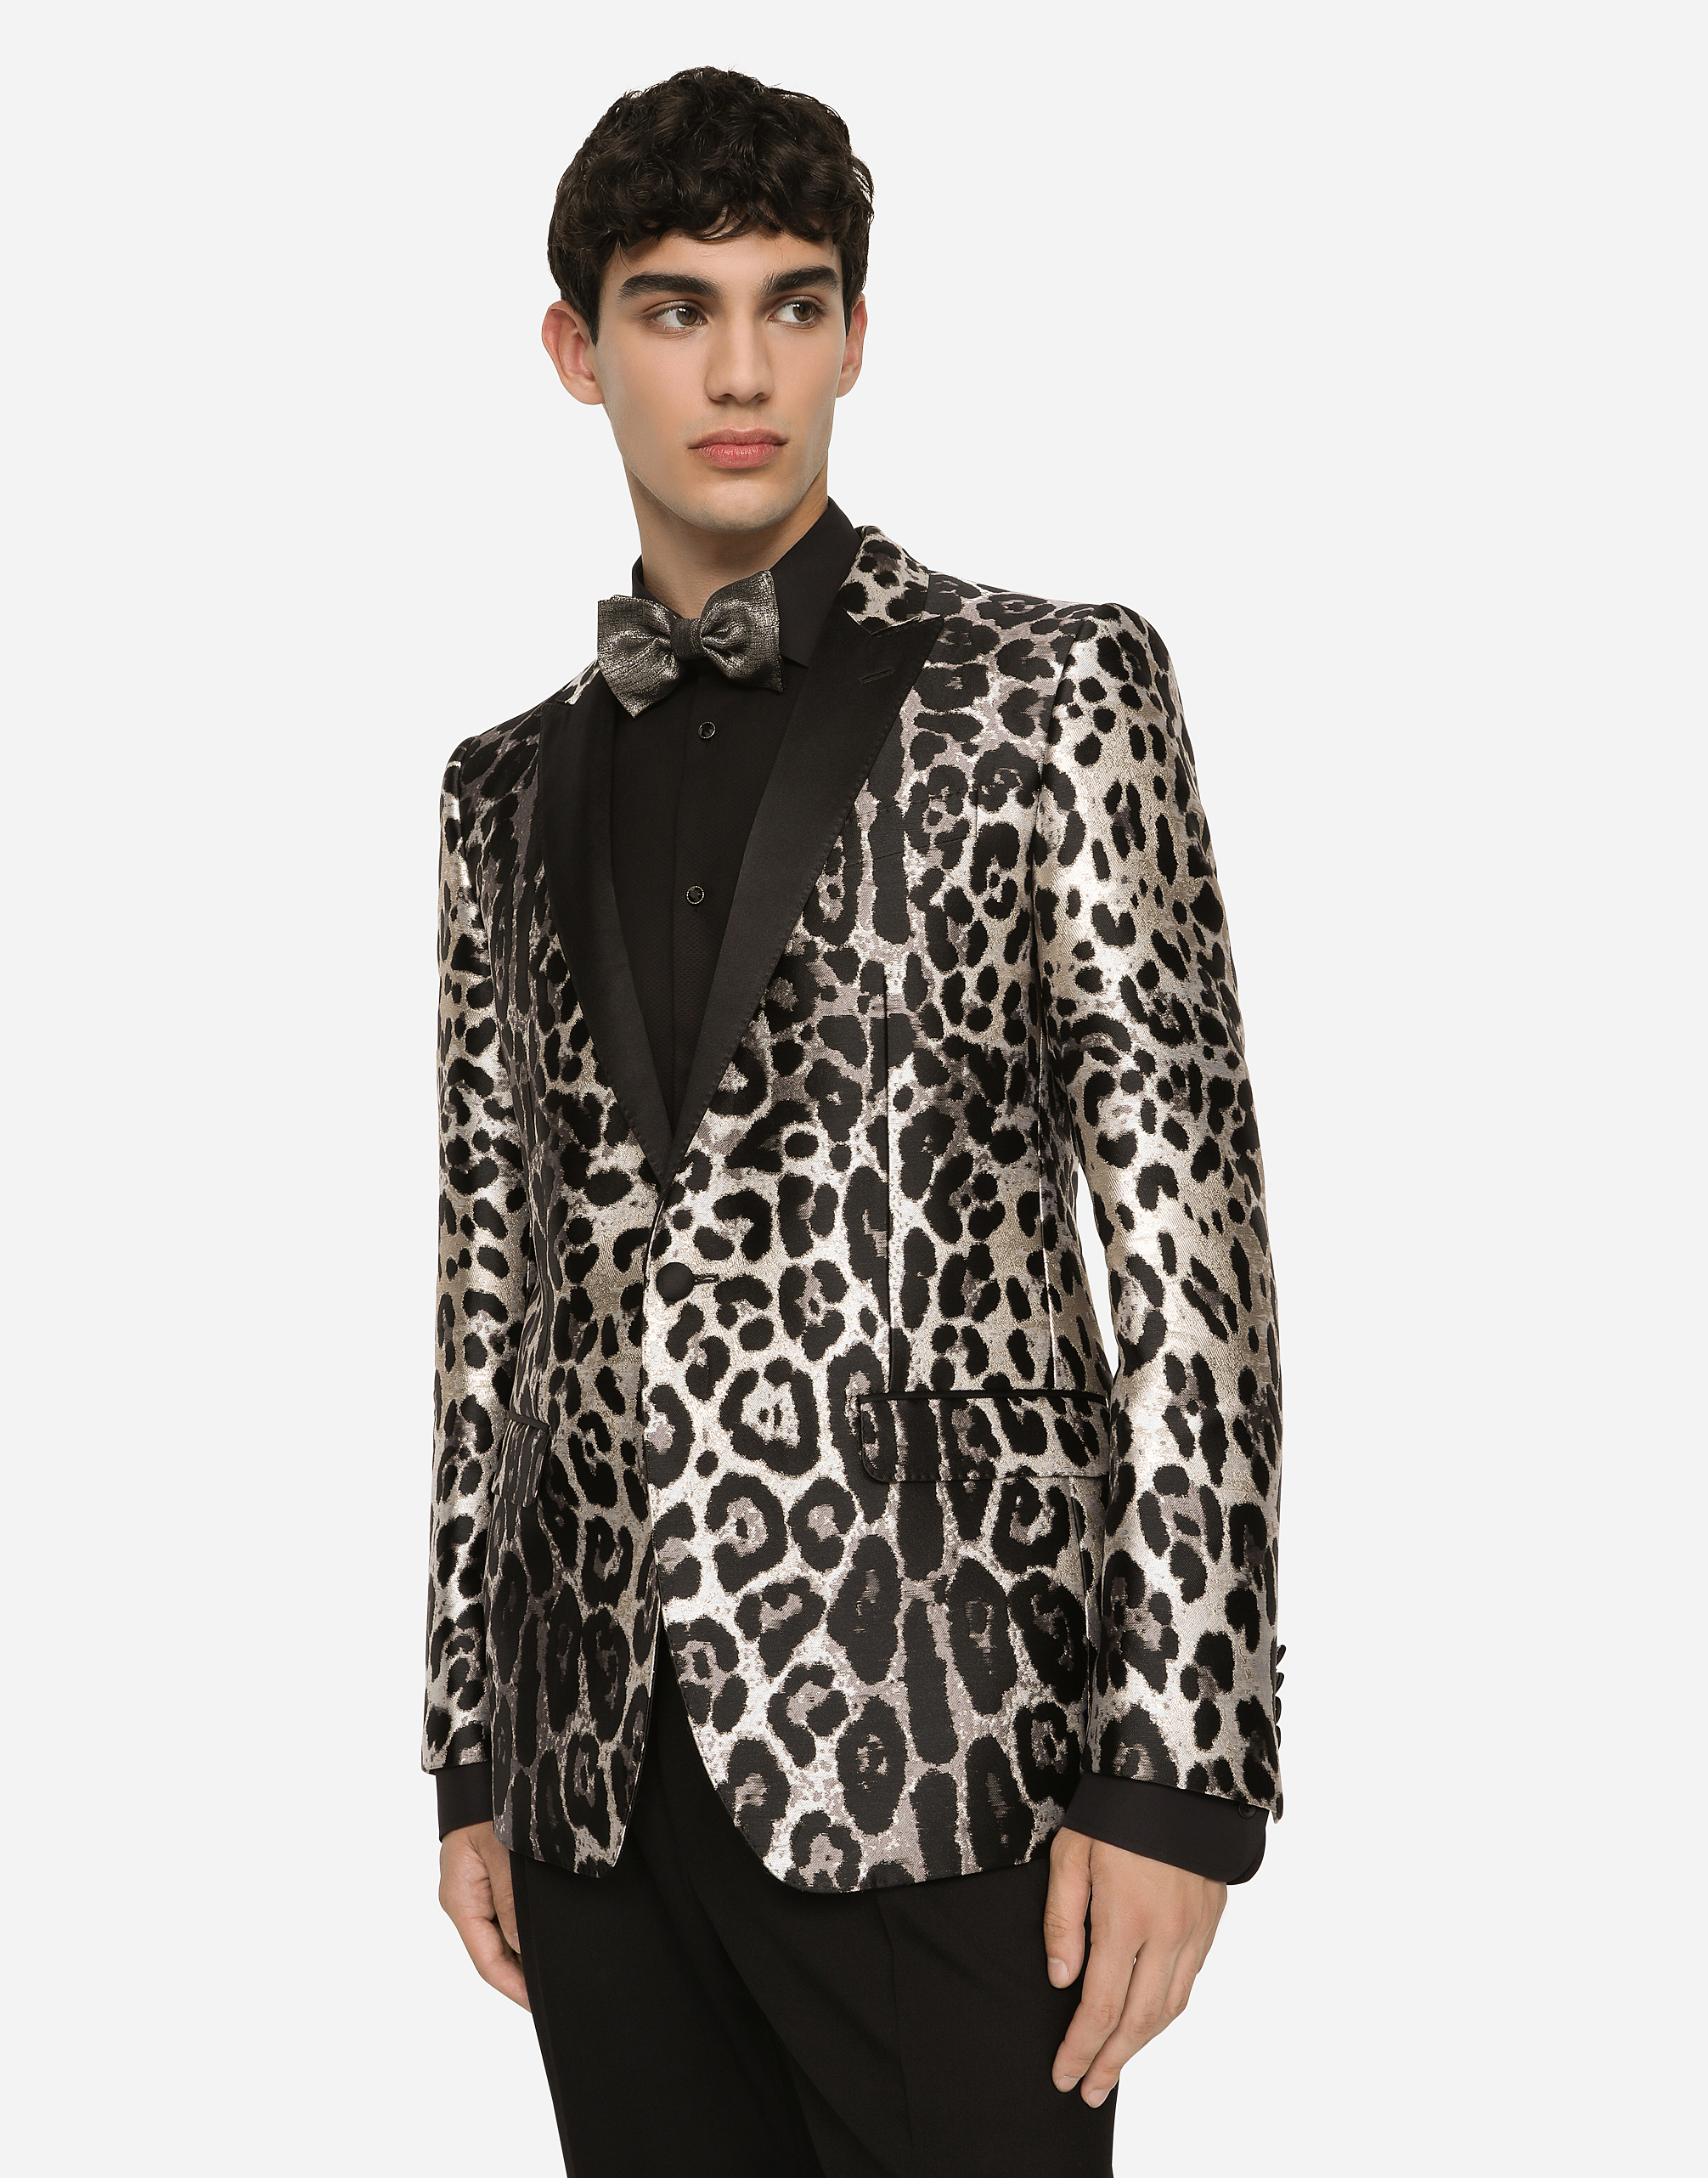 Abiti e Giacche Giacca tuxedo Martini jacquard leopardo male 50 Dolce & Gabbana Uomo Abbigliamento Cappotti e giubbotti Giacche Giacche jacquard 